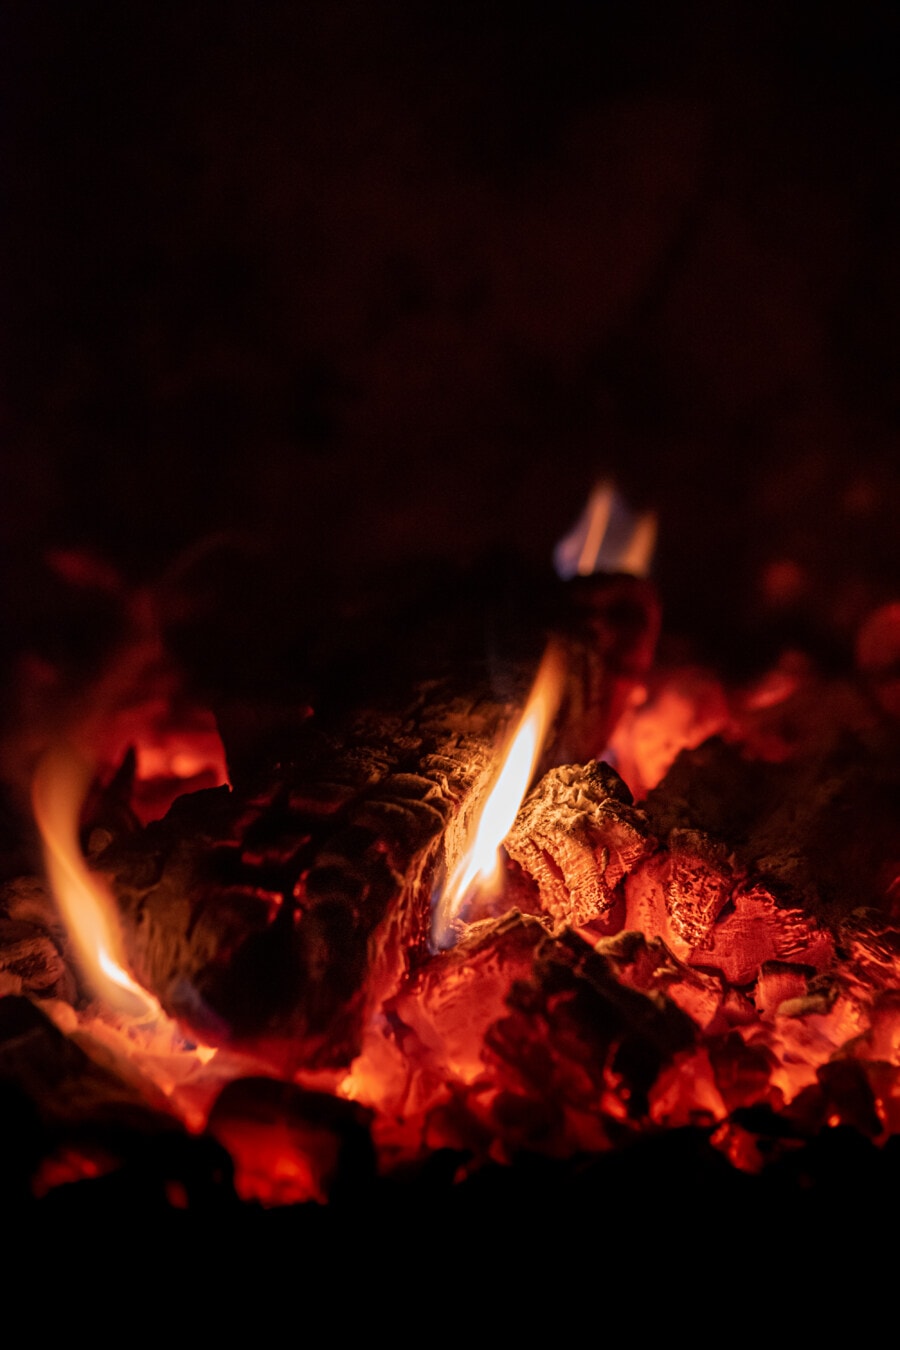 τζάκι, πυρών προσκόπων, φωτιά, έγκαυμα, φως, θερμότητας, ζεστό, ζεστό, άνθρακα, φωτιά